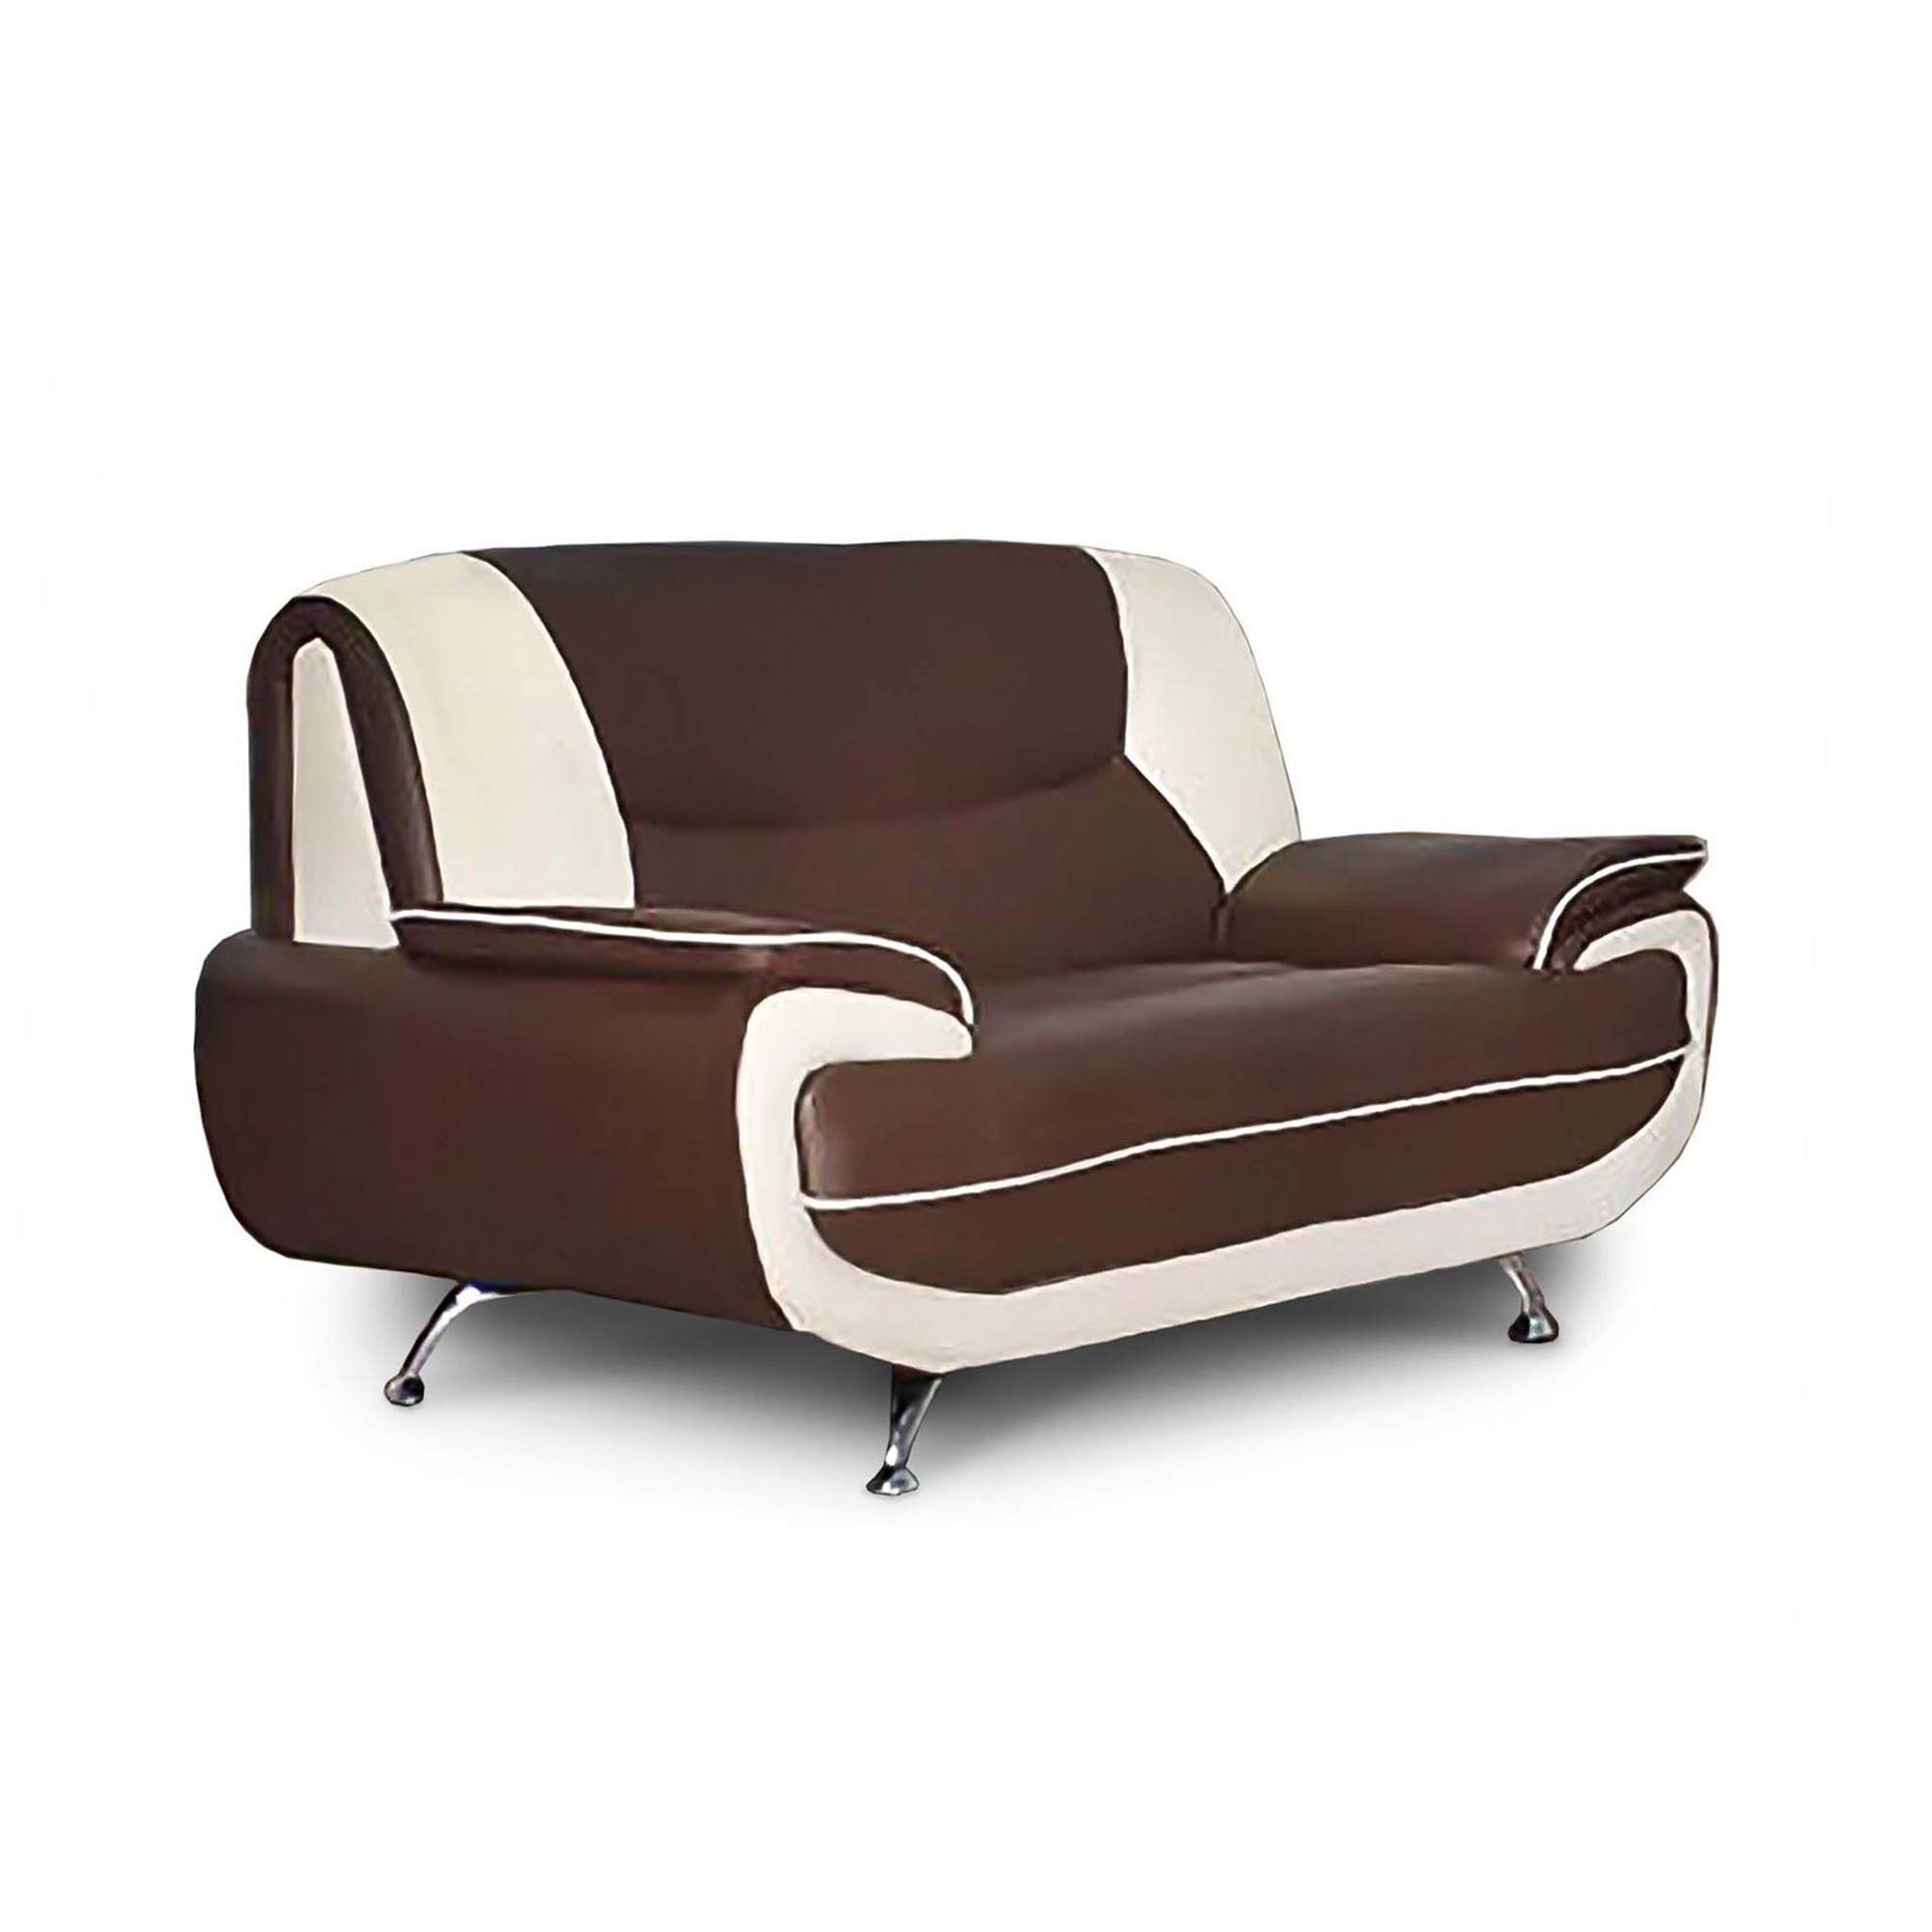 Canapé design 2 places en simili cuir marron et blanc